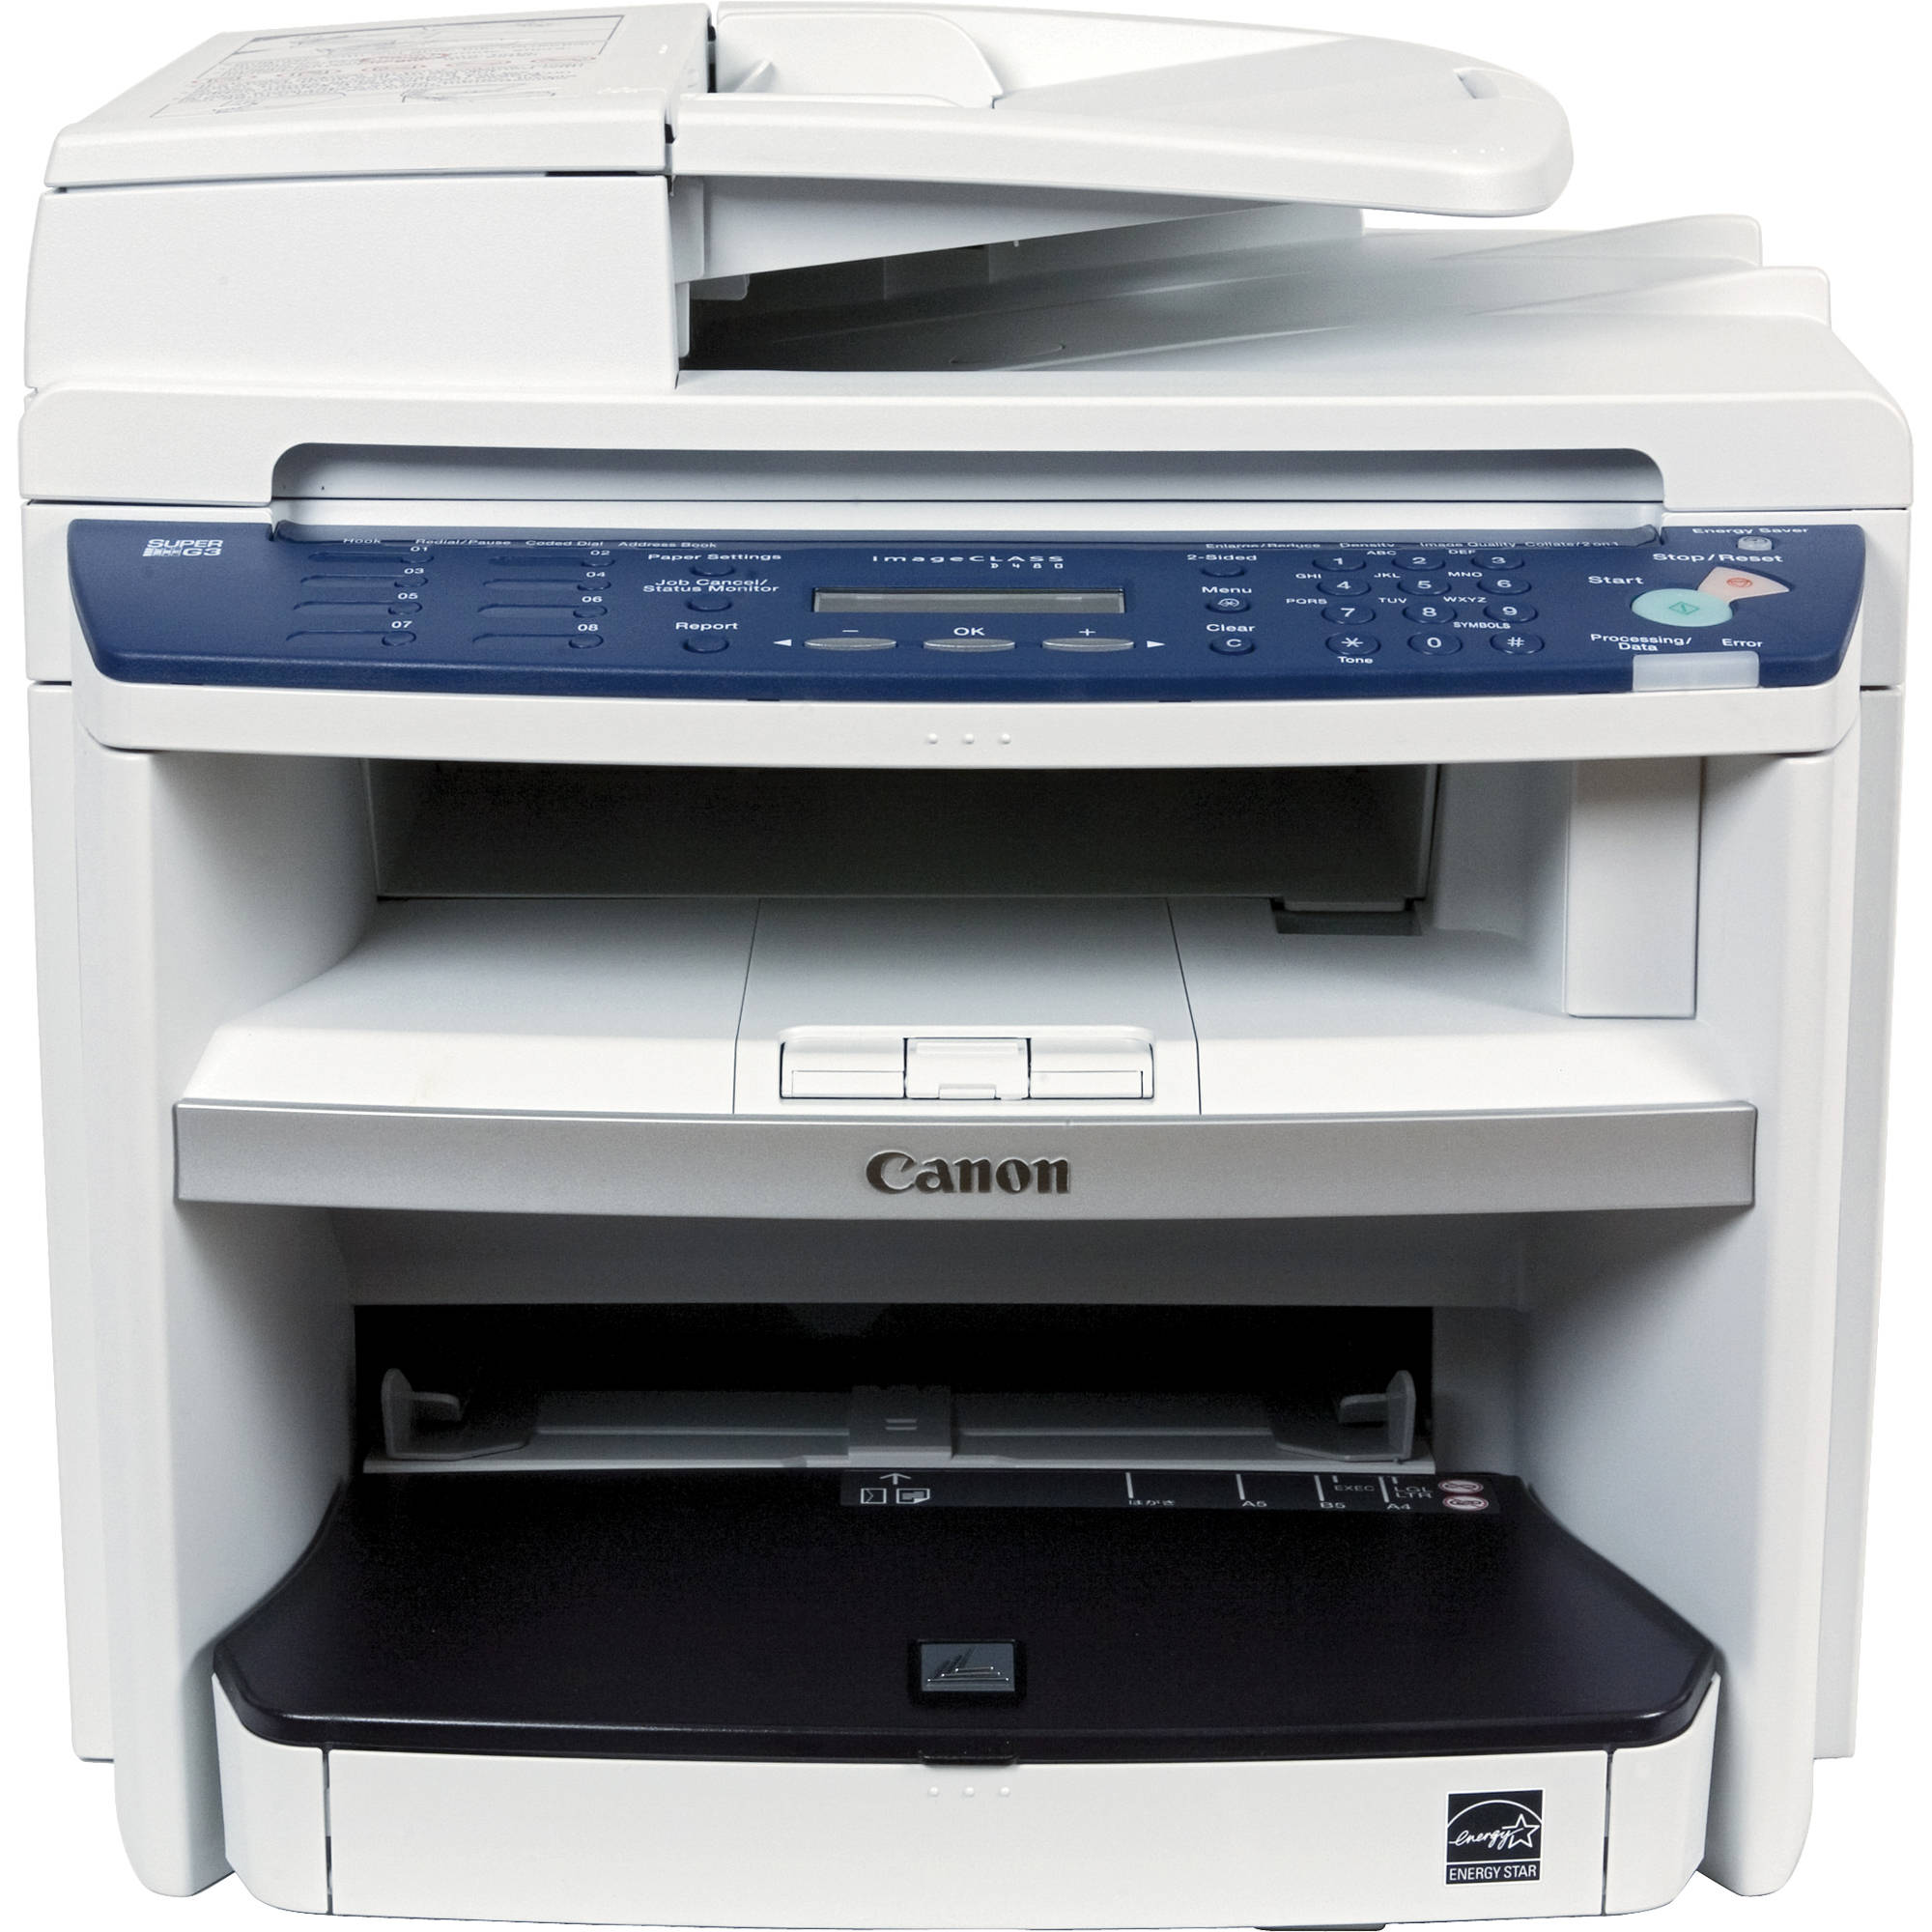 canon super g3 printer software free download